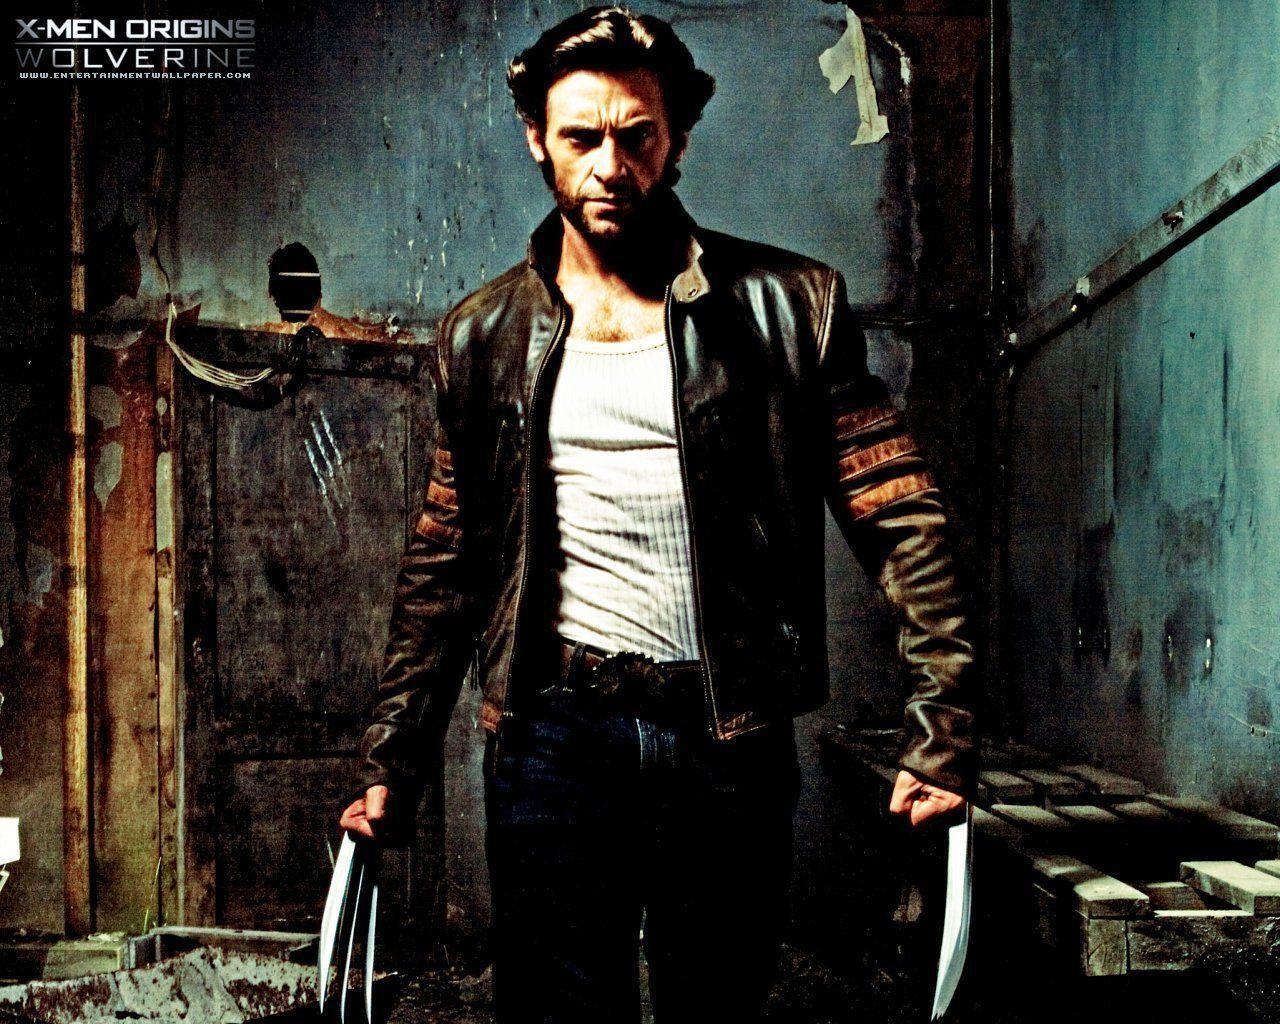 Wolverine Movie Wallpaper